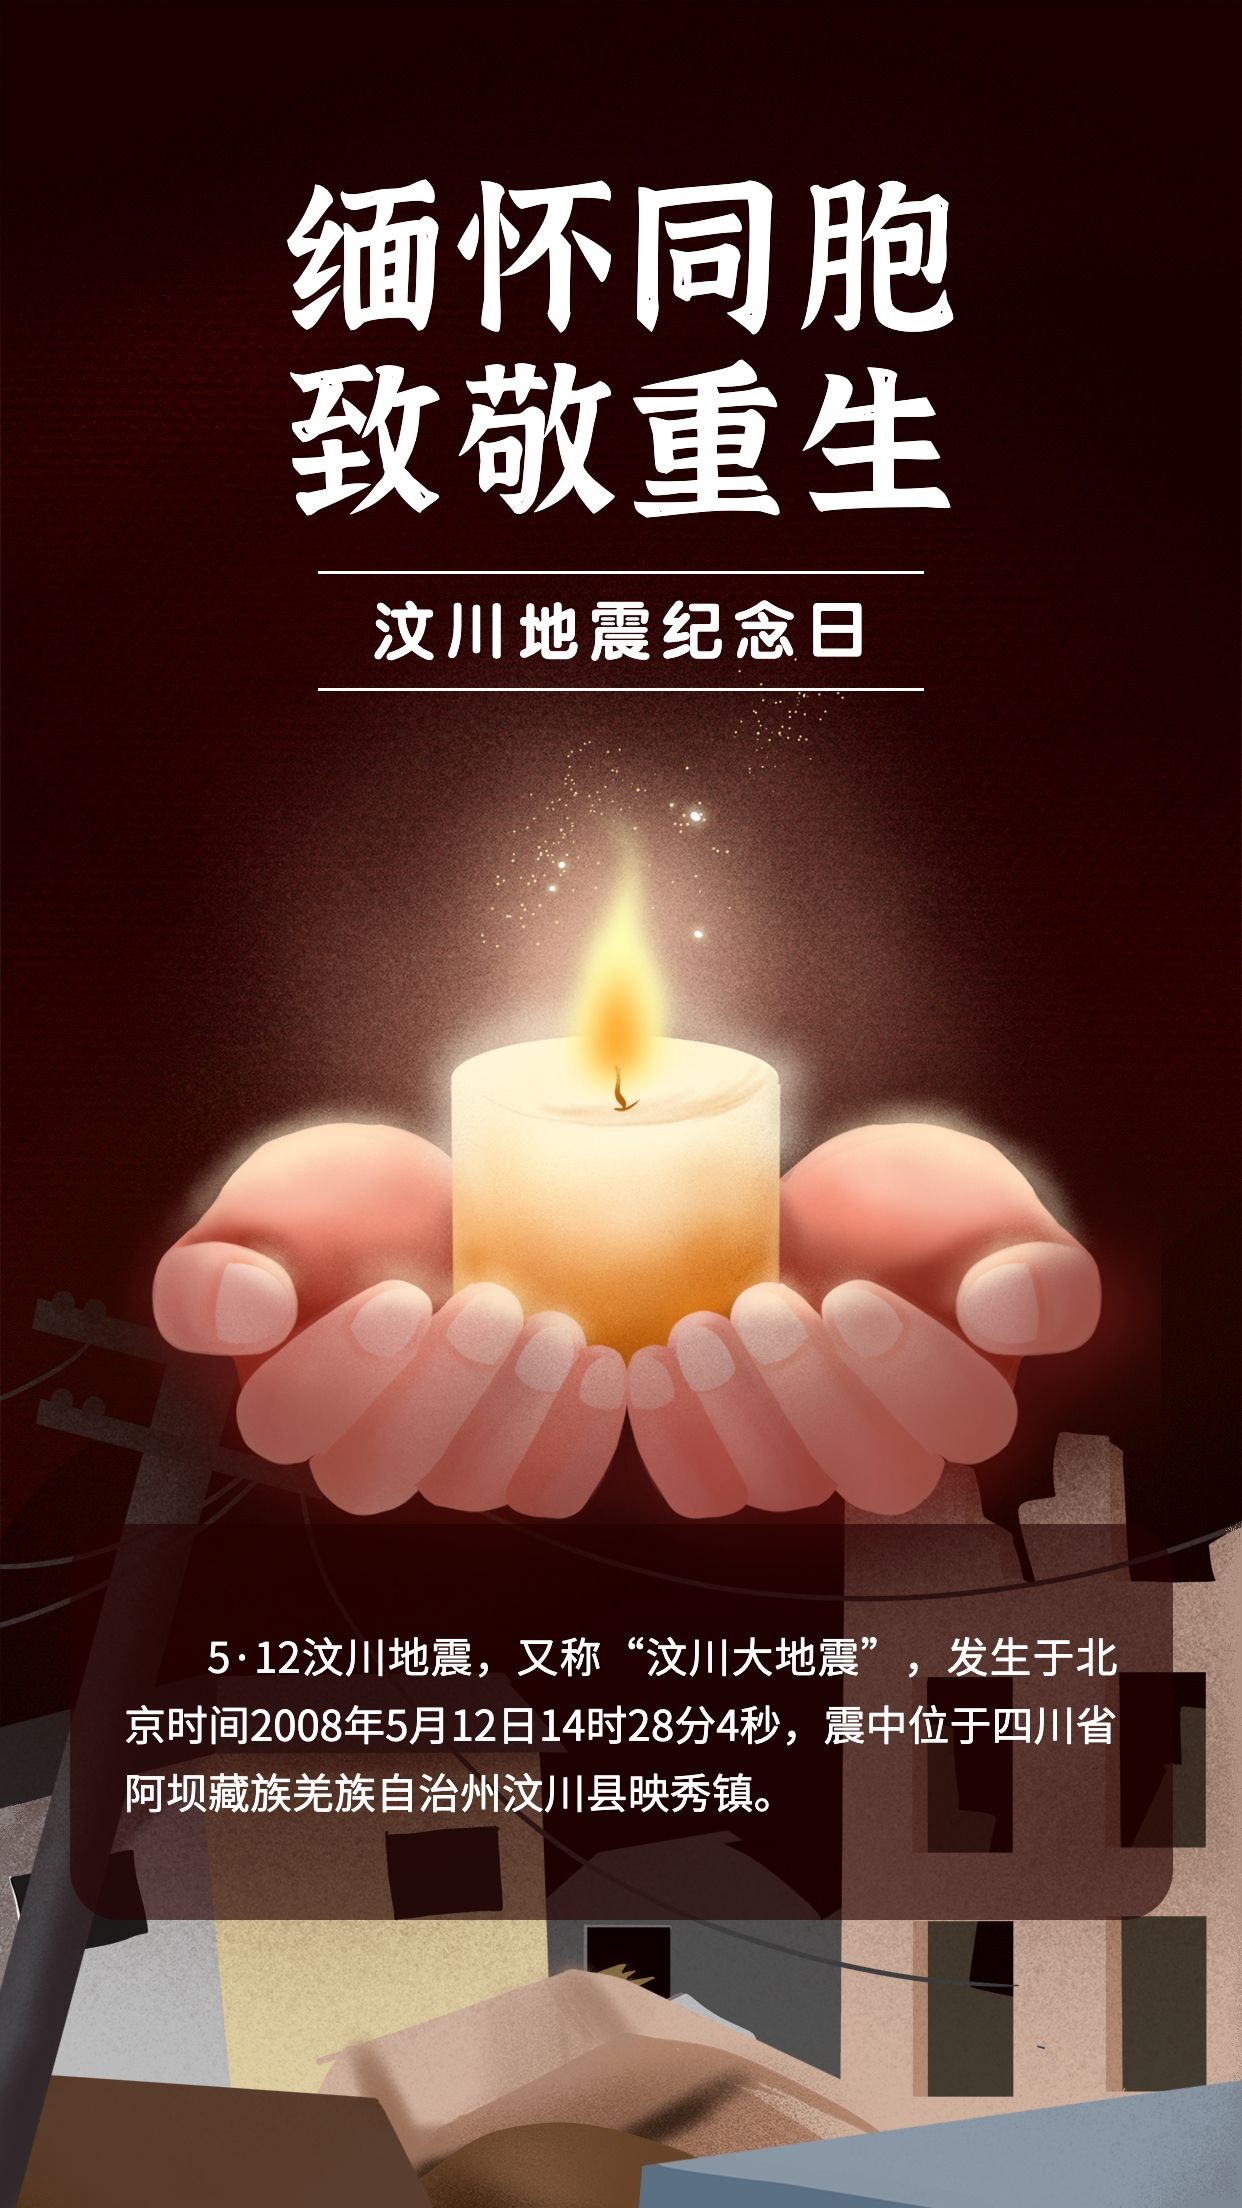 汶川地震纪念日节日宣传手绘插画手机海报